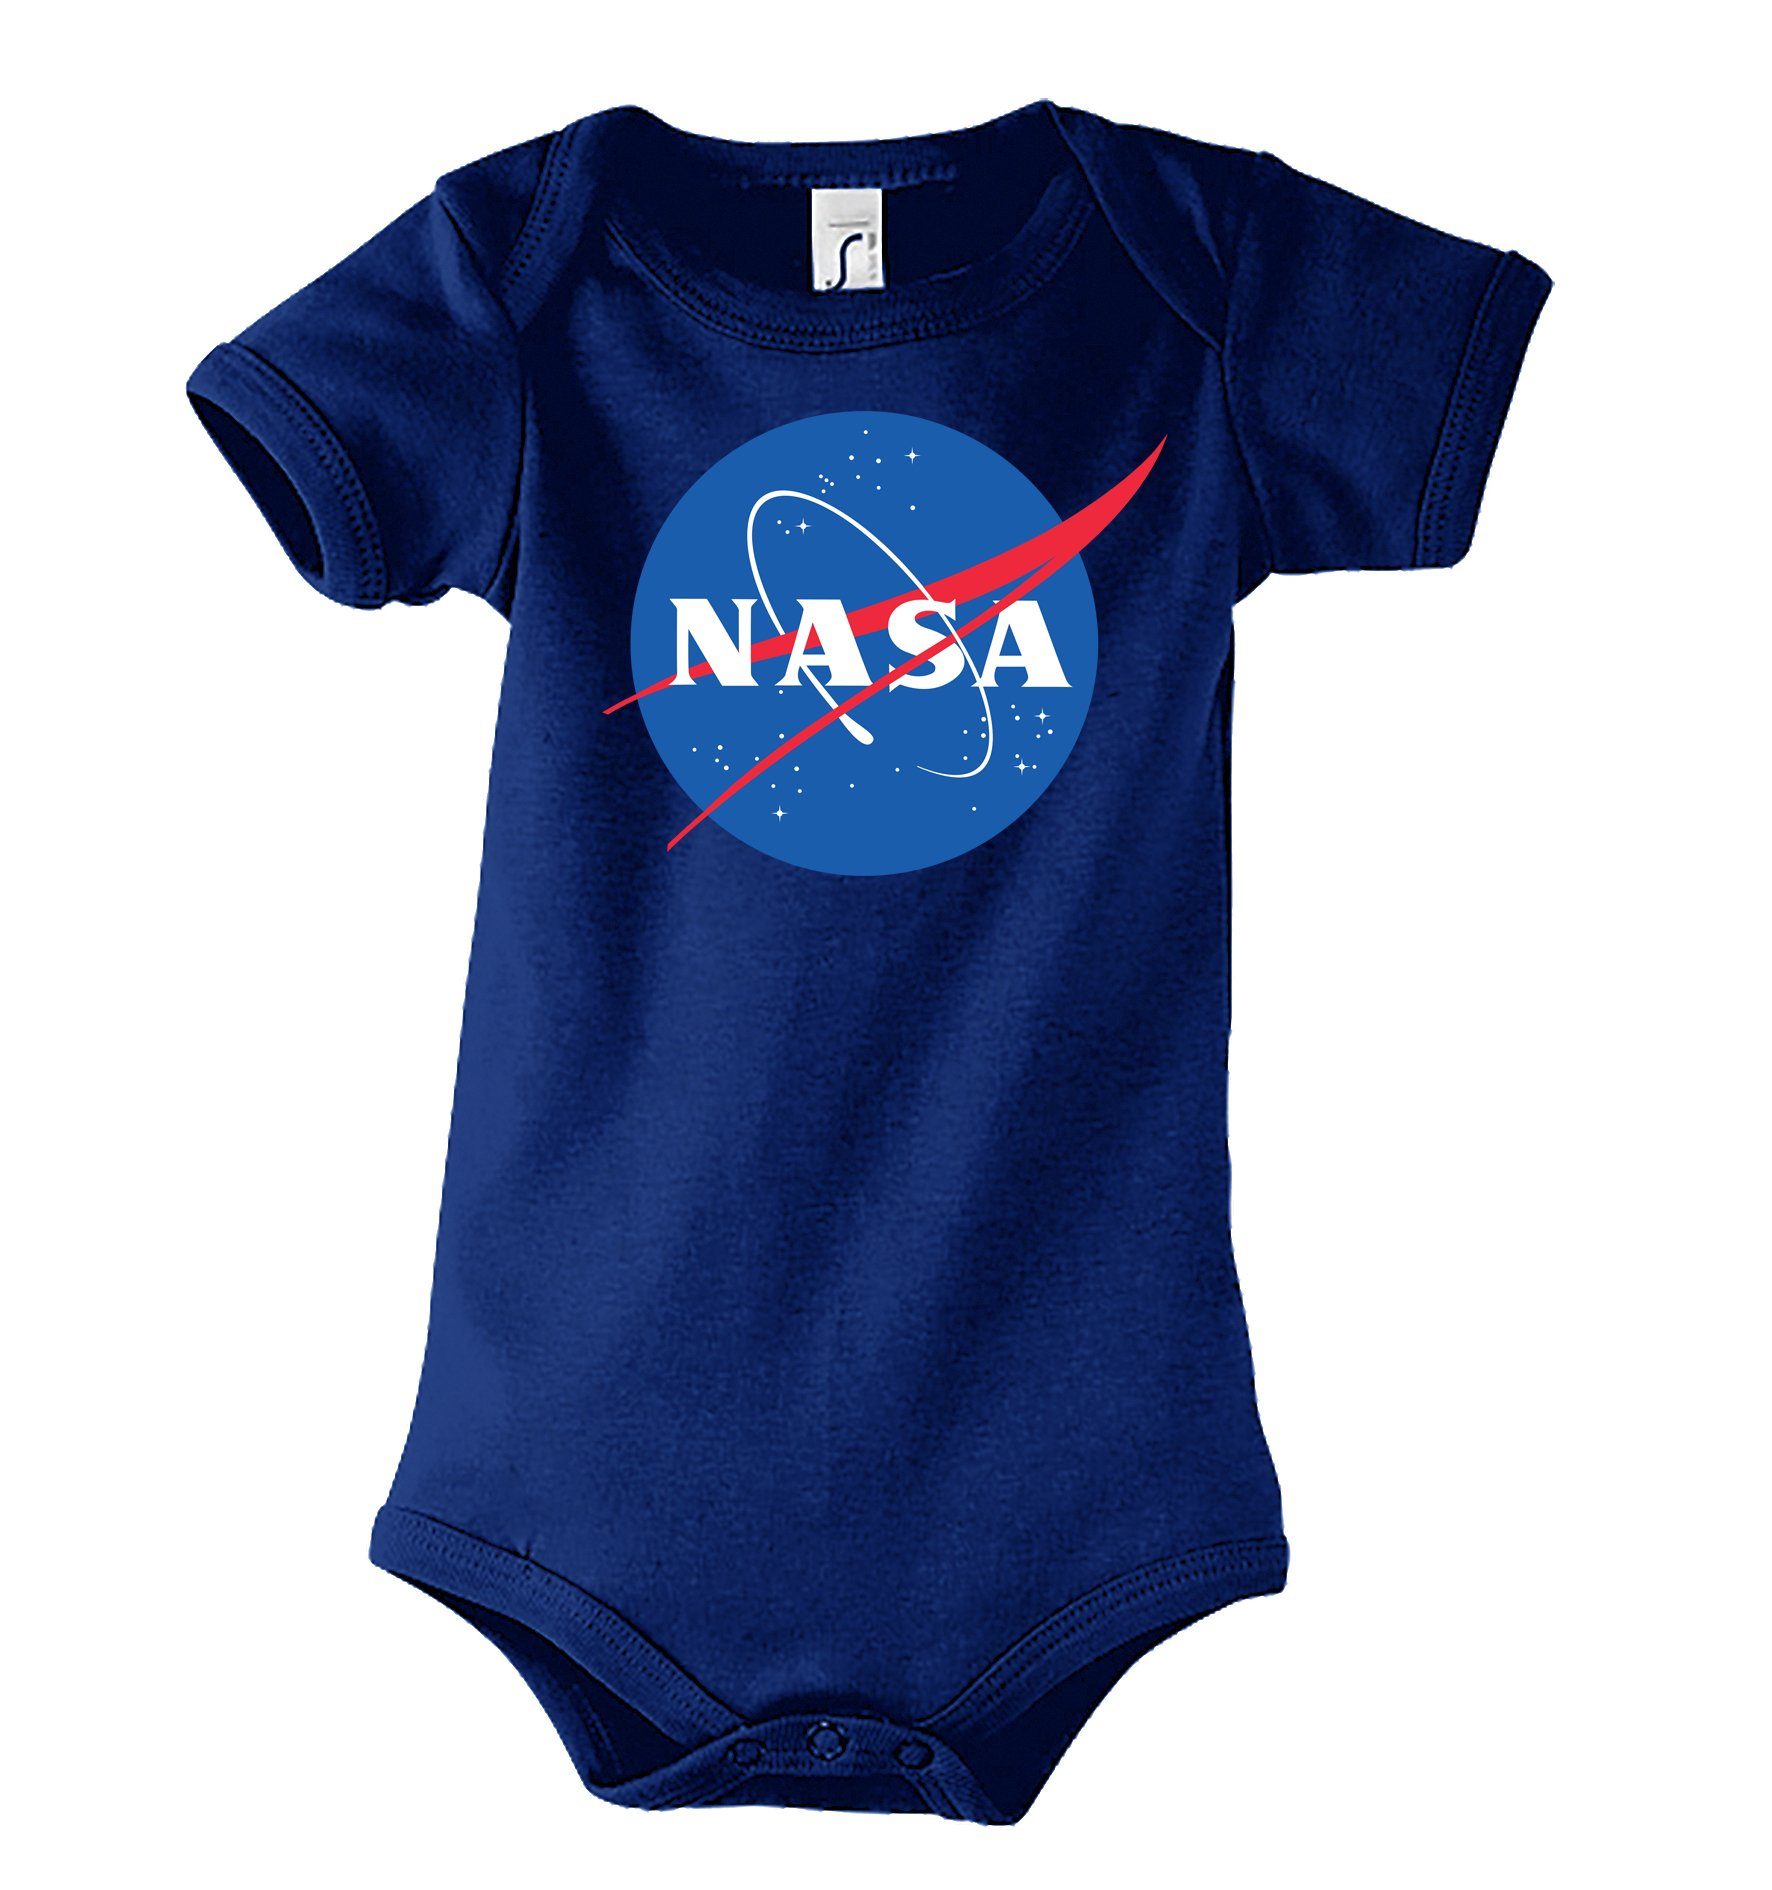 Kurzarmbody Body Frontprint Baby mit Youth Designz Strampler NASA Navy niedlichem